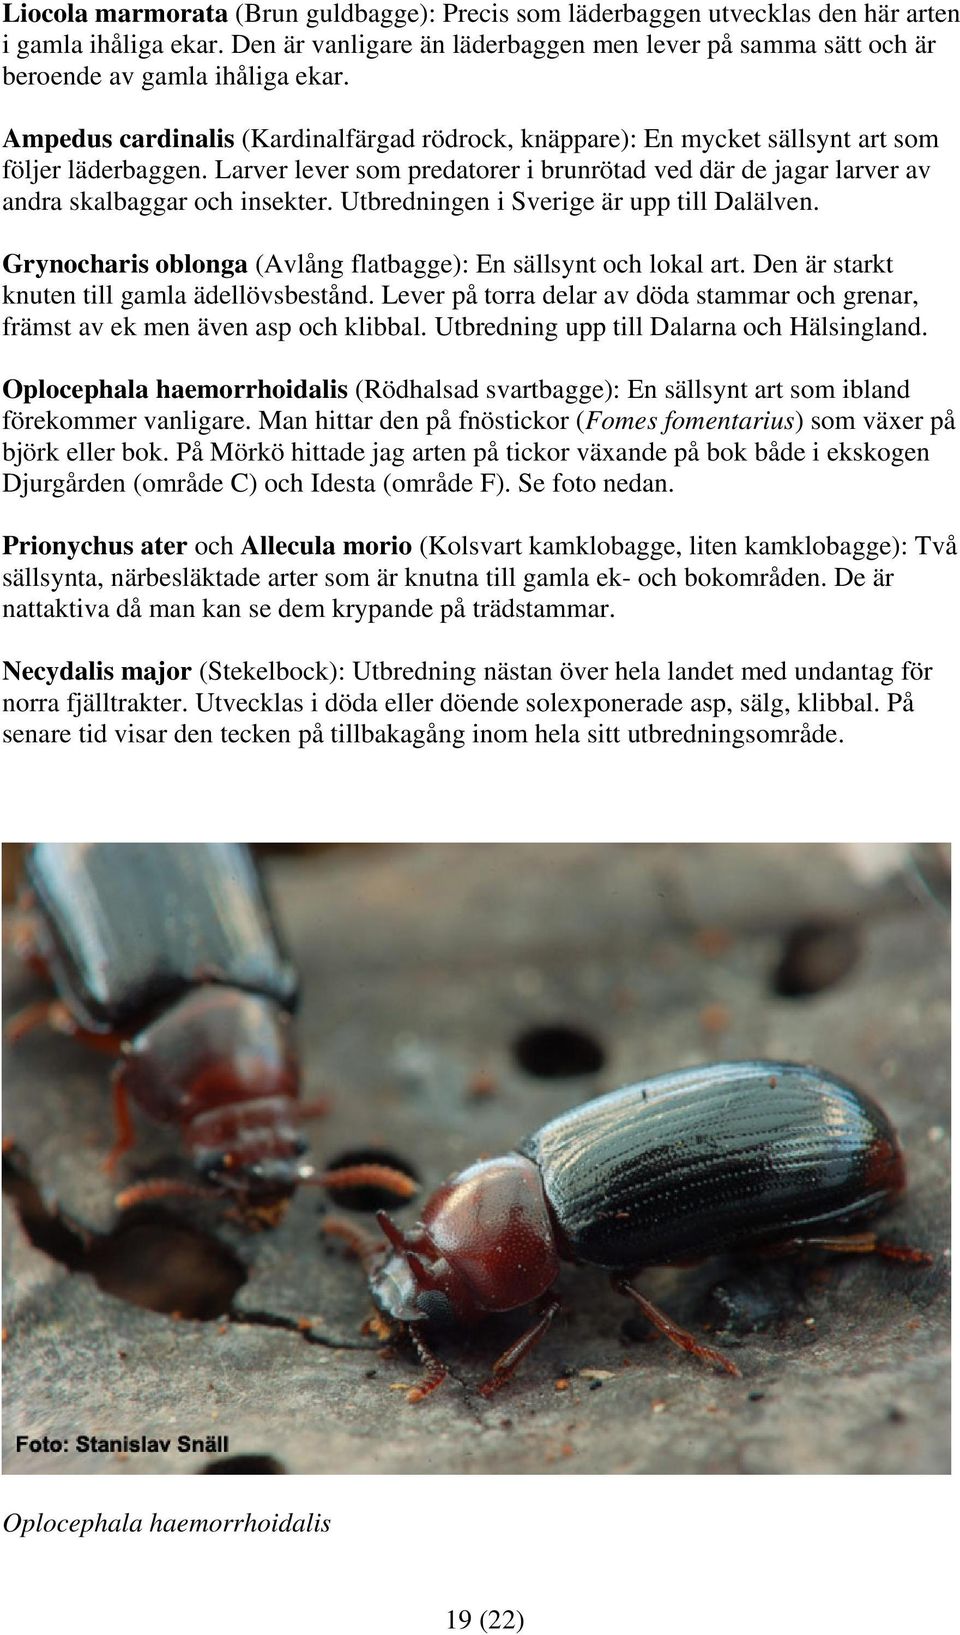 Utbredningen i Sverige är upp till Dalälven. Grynocharis oblonga (Avlång flatbagge): En sällsynt och lokal art. Den är starkt knuten till gamla ädellövsbestånd.